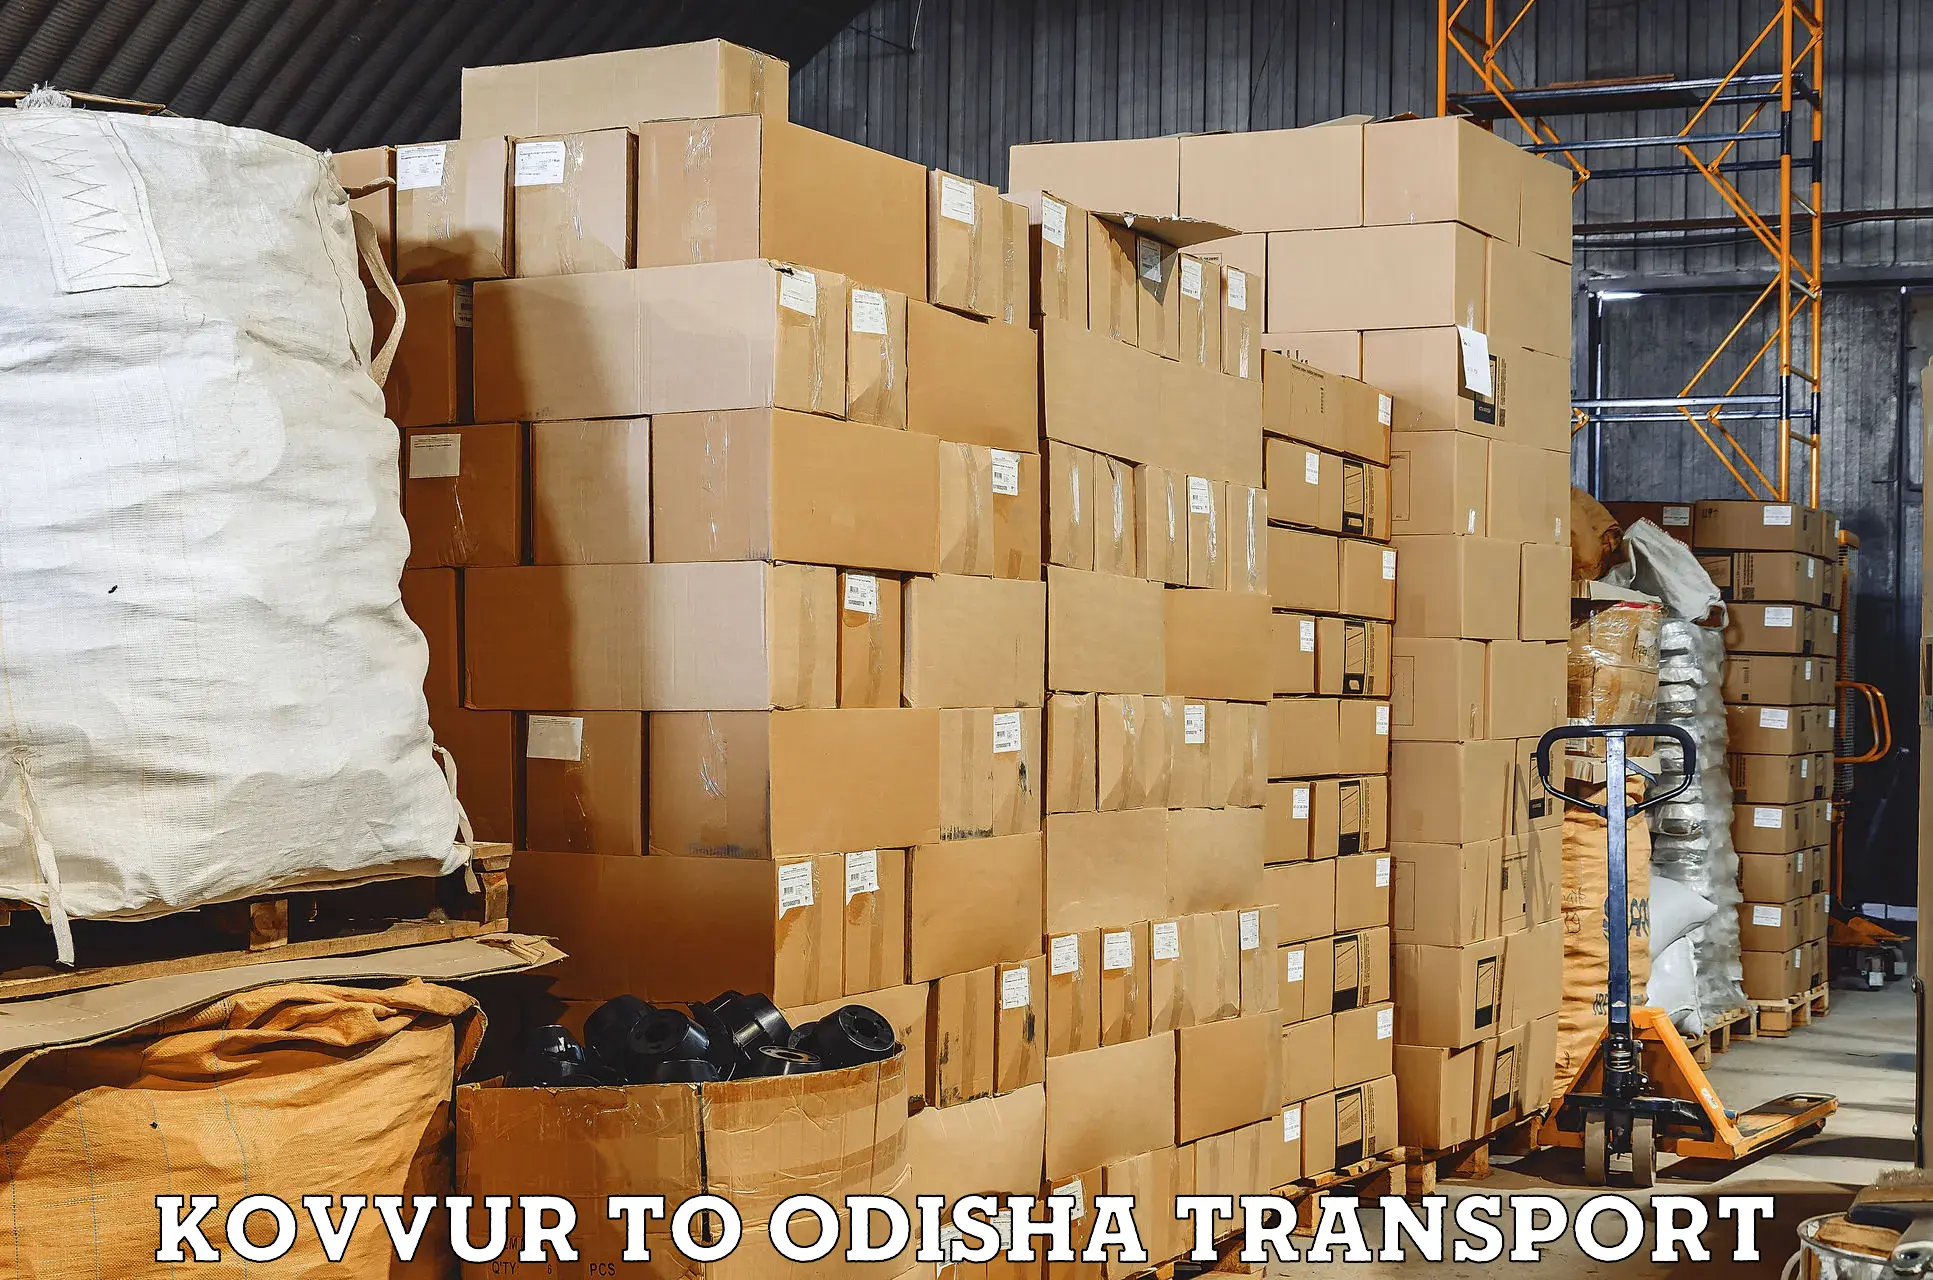 Interstate transport services Kovvur to Chandikhol